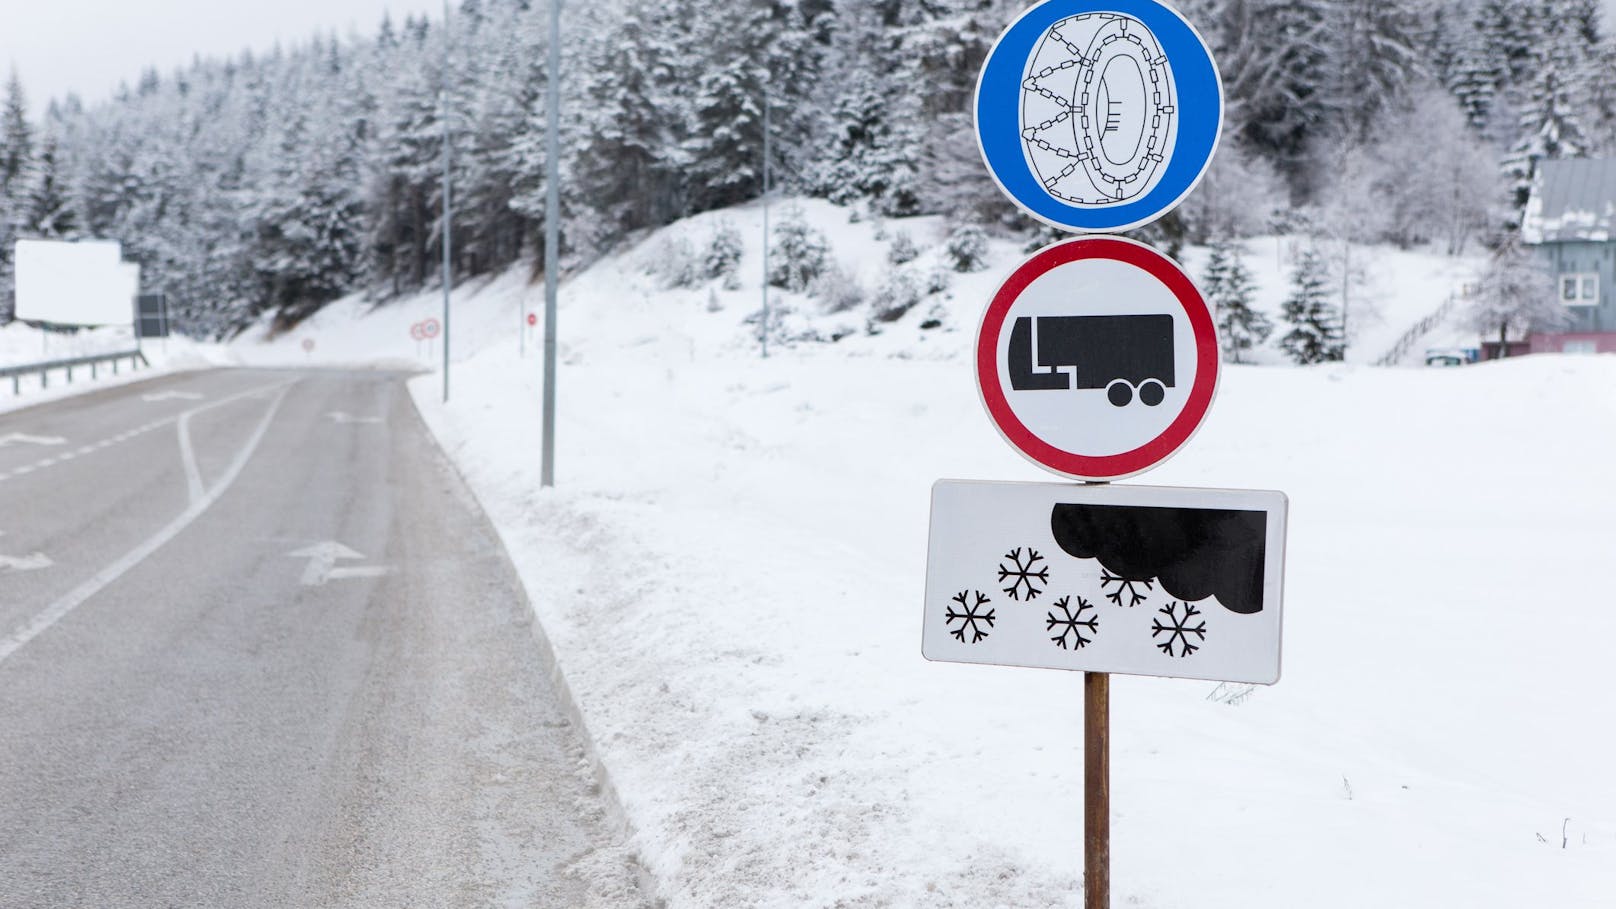 Keine Schneeketten! Lkw-Lenker rutscht von der Straße